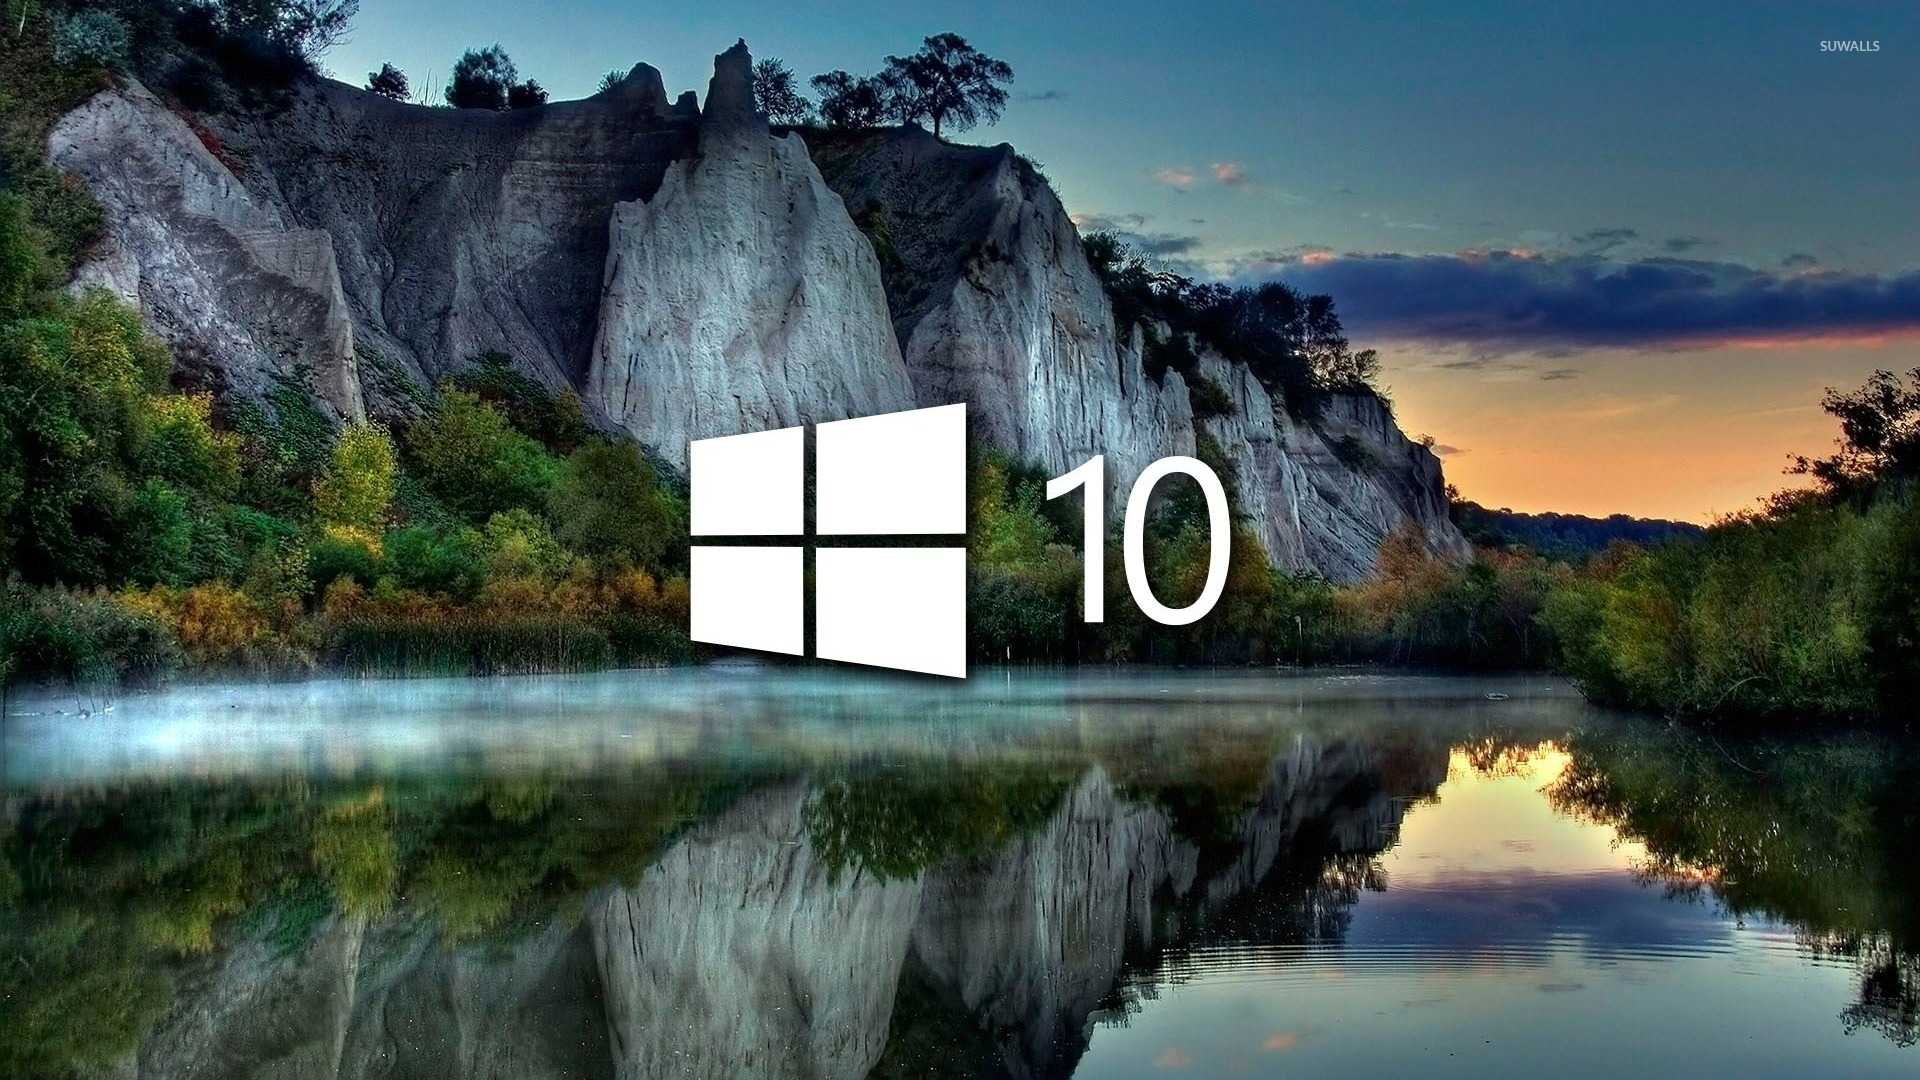 Изображение не на весь экран windows 10: как полностью открыть картинку, 4 способа